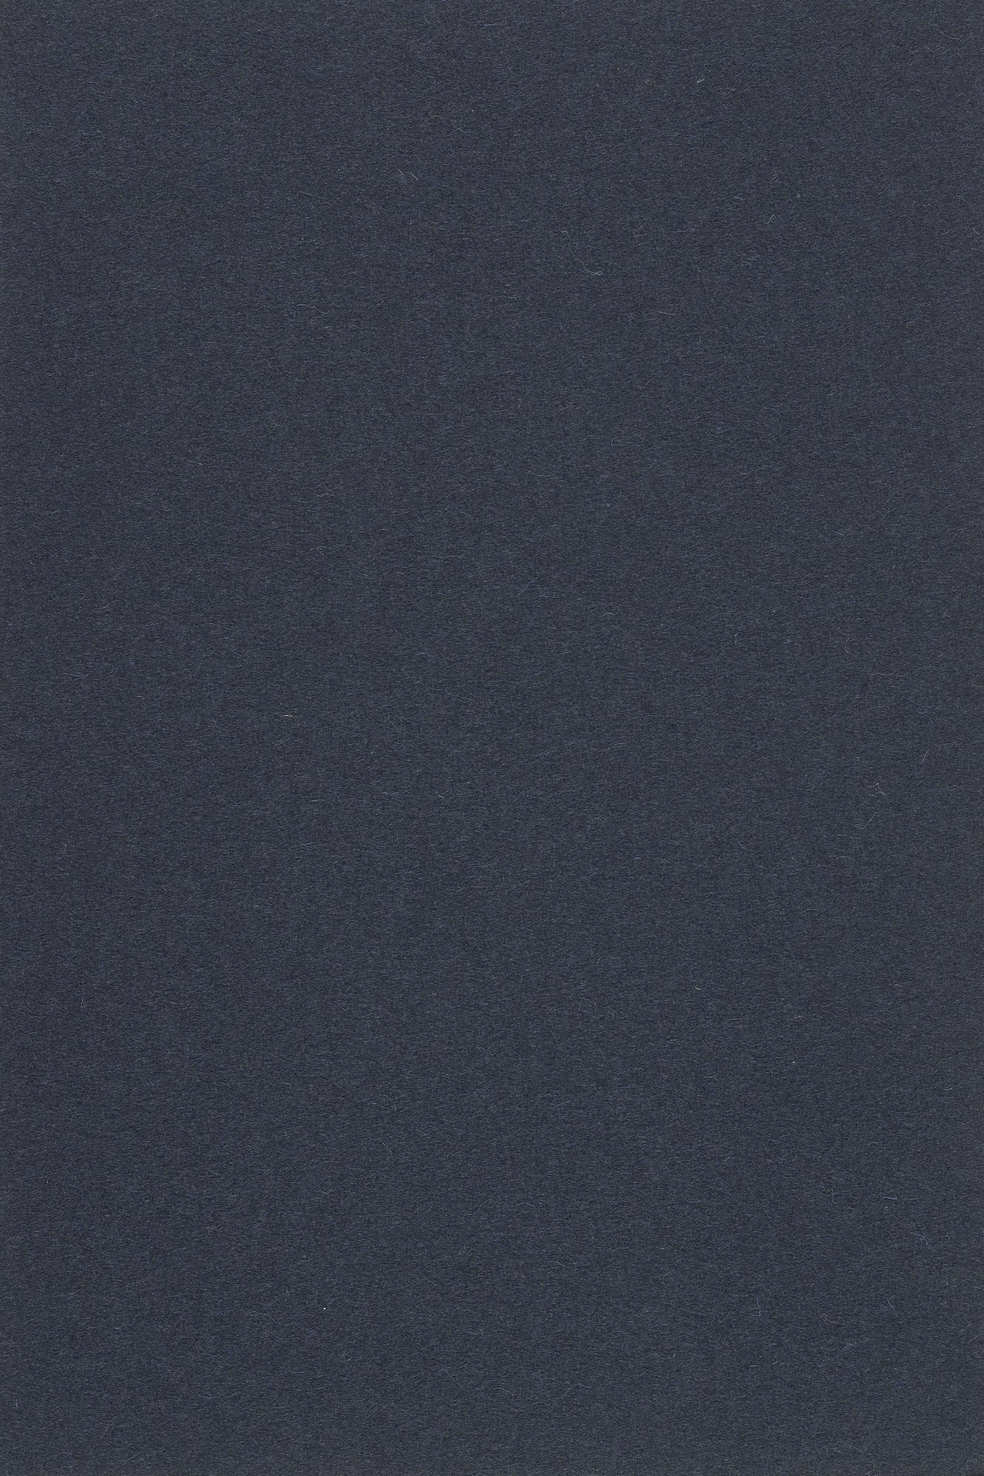 Fabric sample Divina 3 793 grey